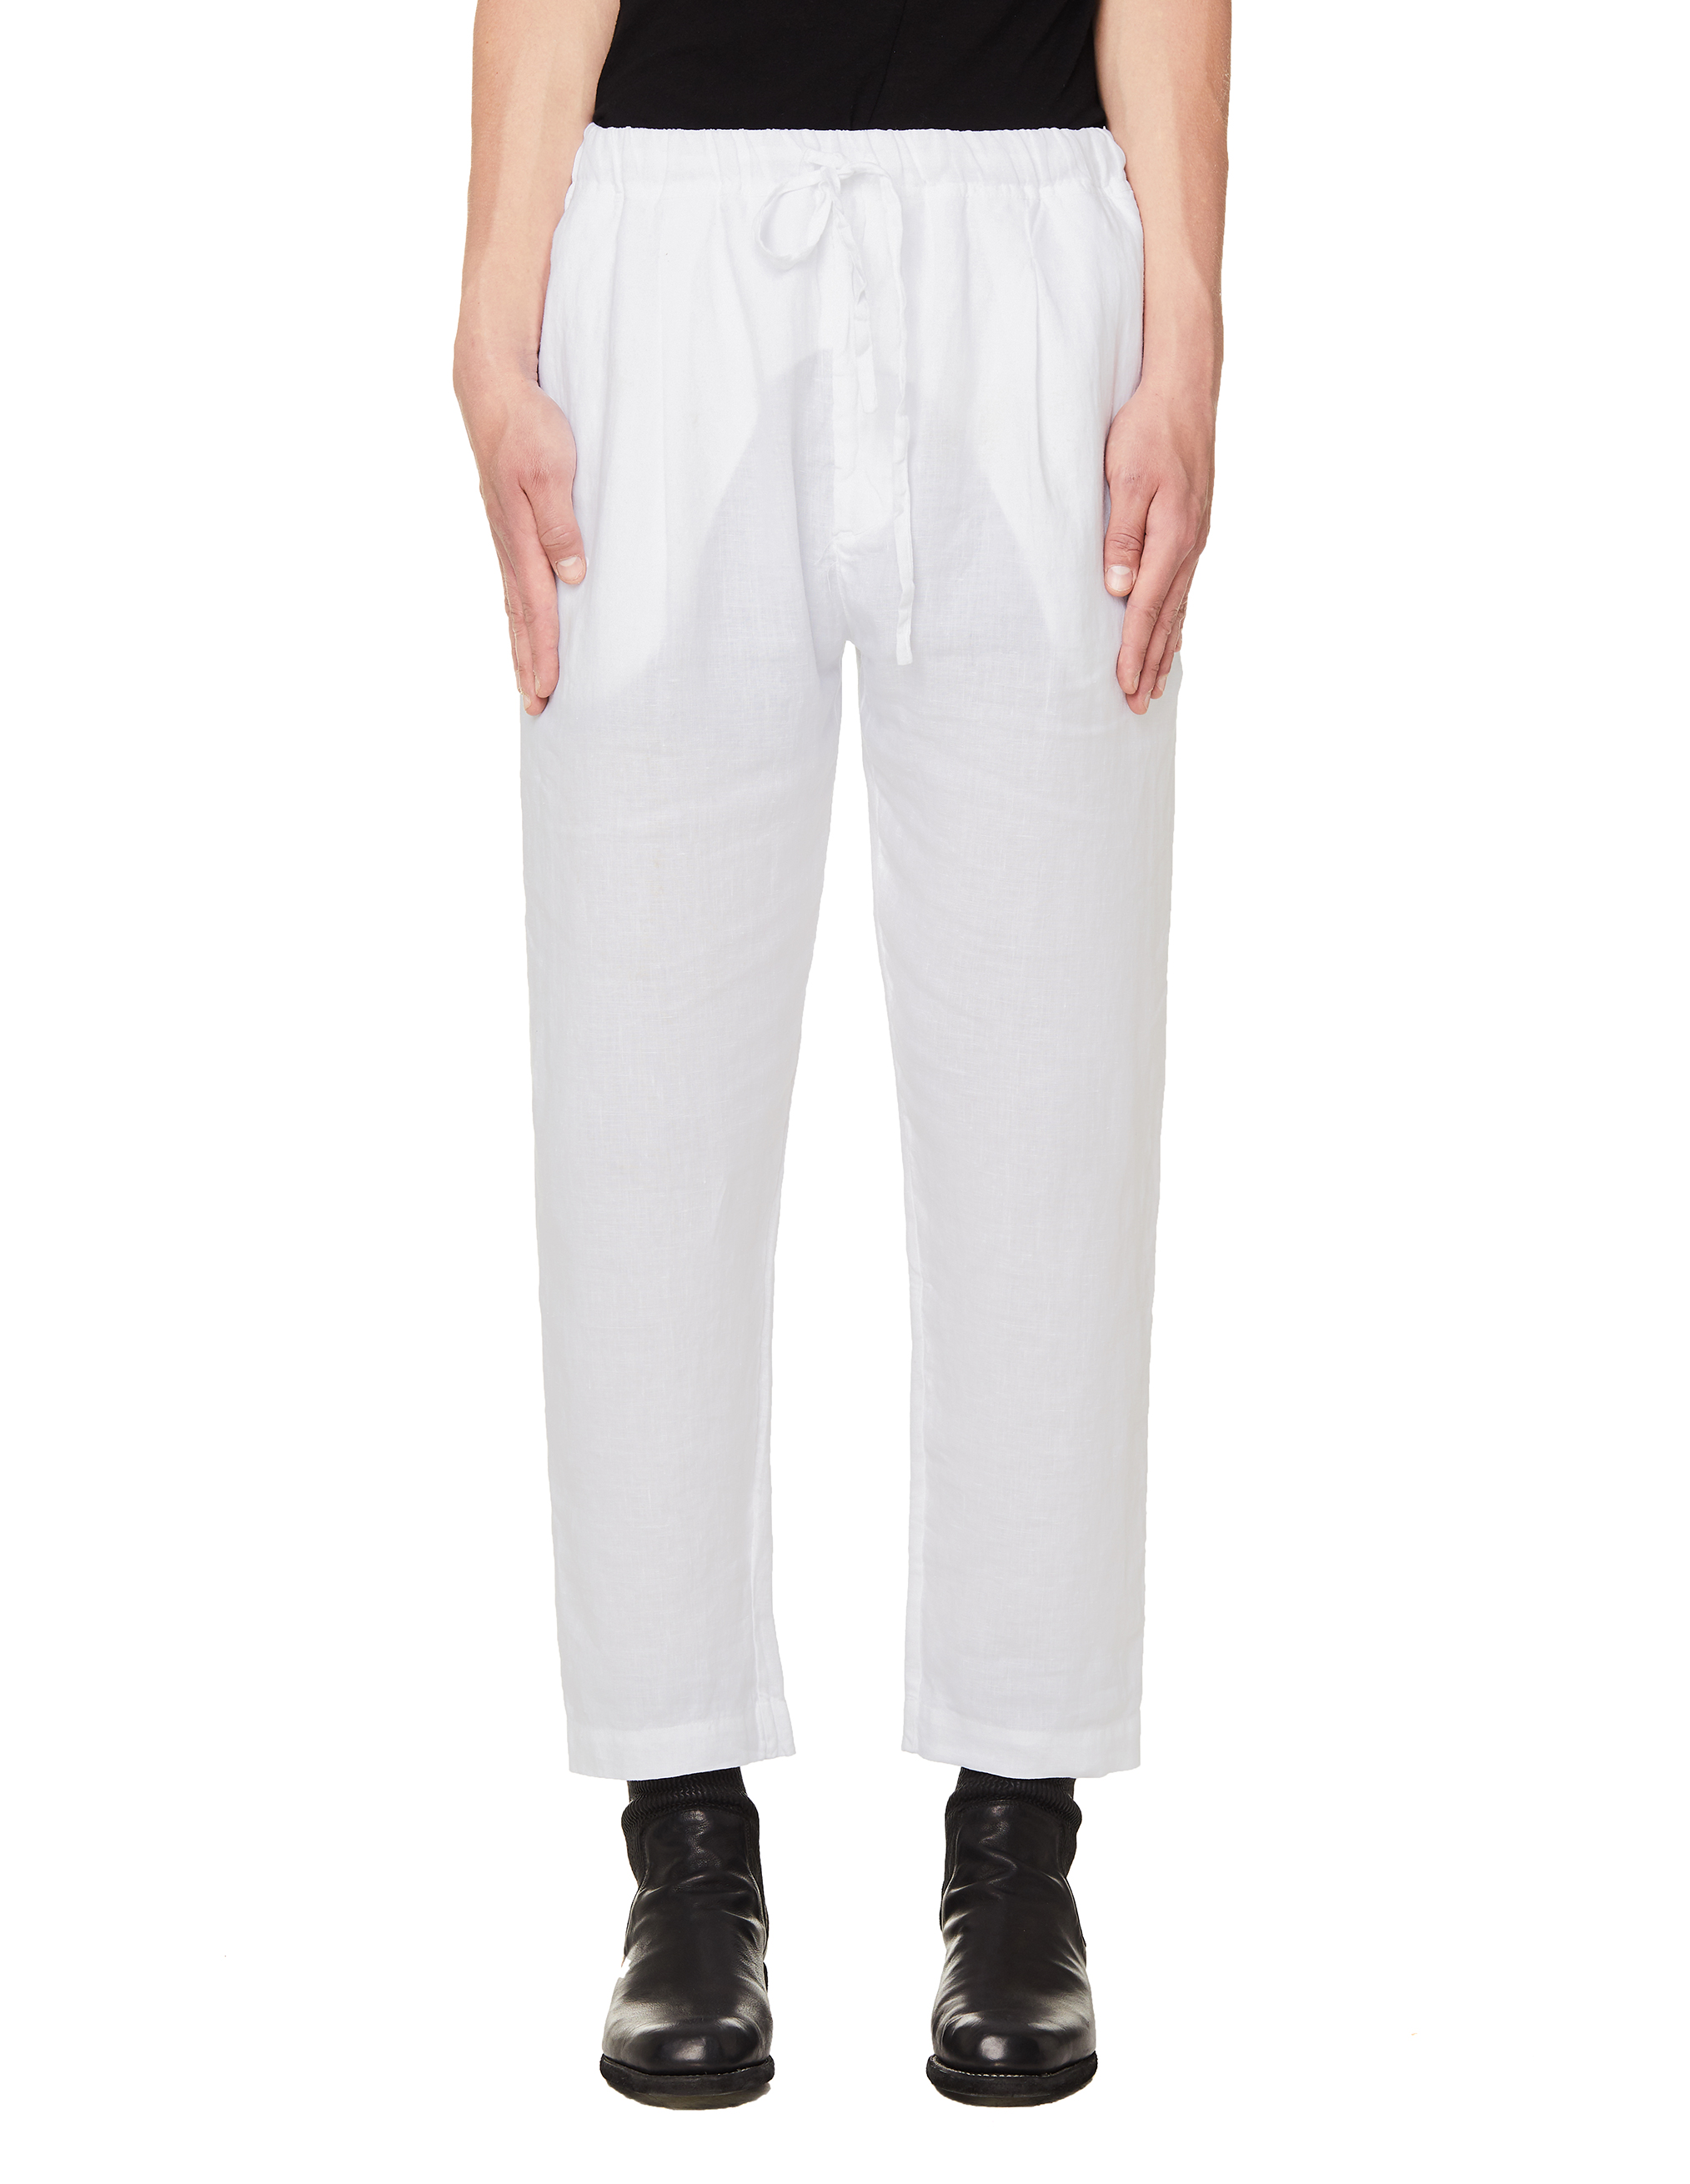 Buy 120% Lino men white linen trousers for $120 online on SVMOSCOW ...